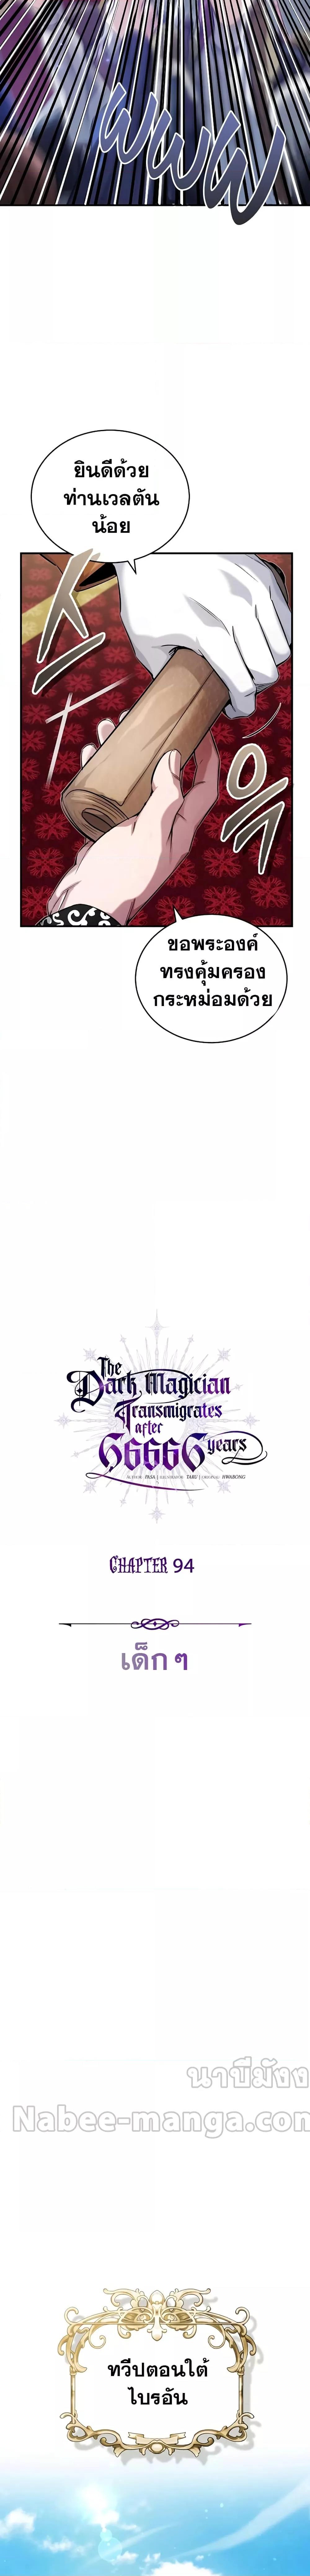 The Dark Magician Transmigrates After 66666 Years à¸•à¸­à¸™à¸—à¸µà¹ˆ 94 09